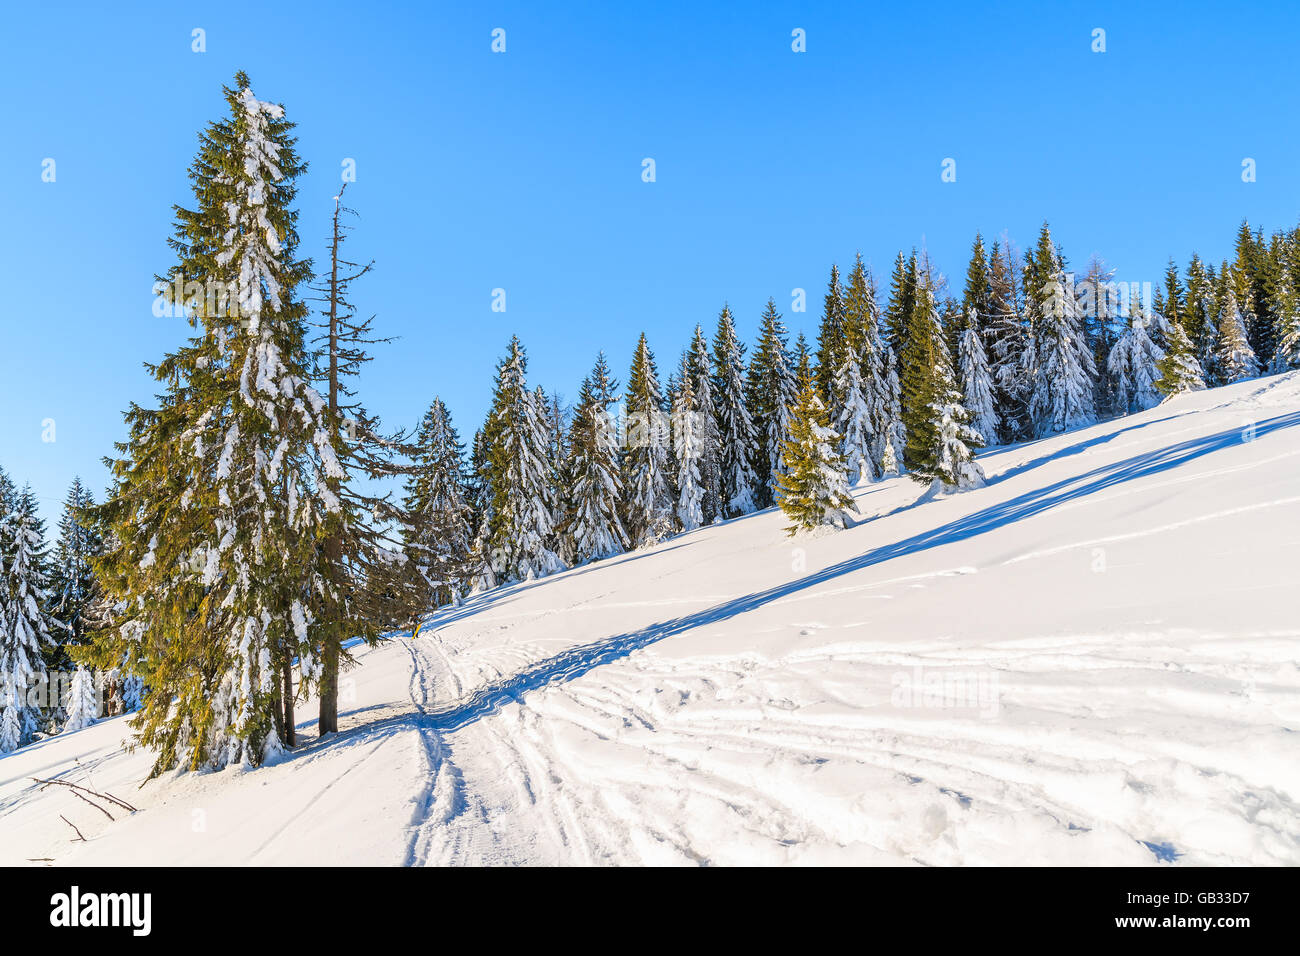 La route d'hiver dans les montagnes Gorce après les chutes de neige fraîche, Pologne Banque D'Images